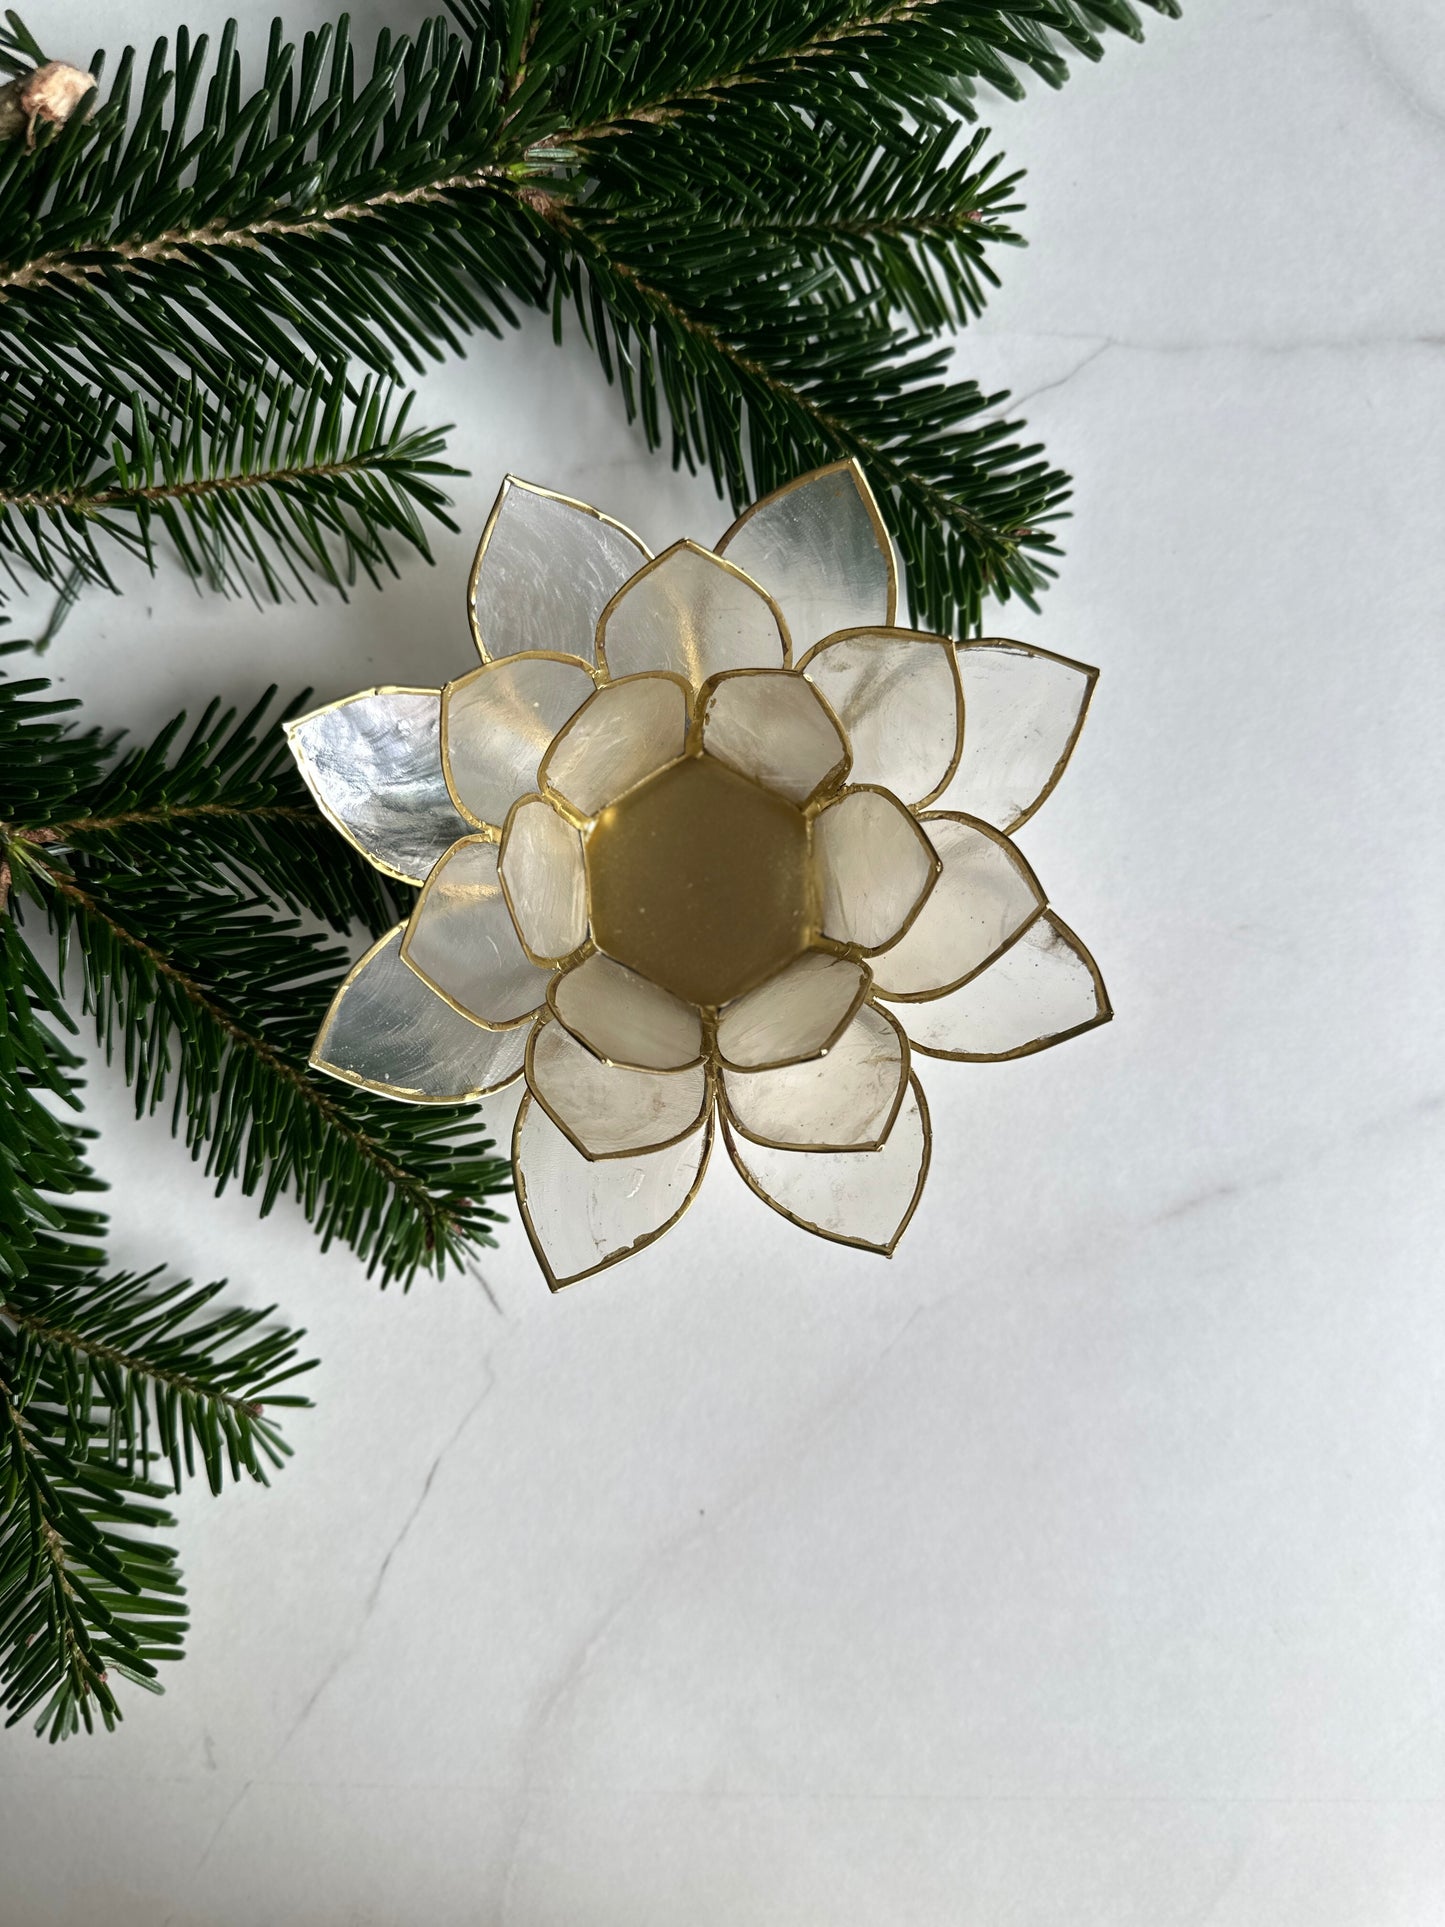 Weiße Lotusblume für Deine Teelichter: Ein Symbol der Reinheit und Erleuchtung